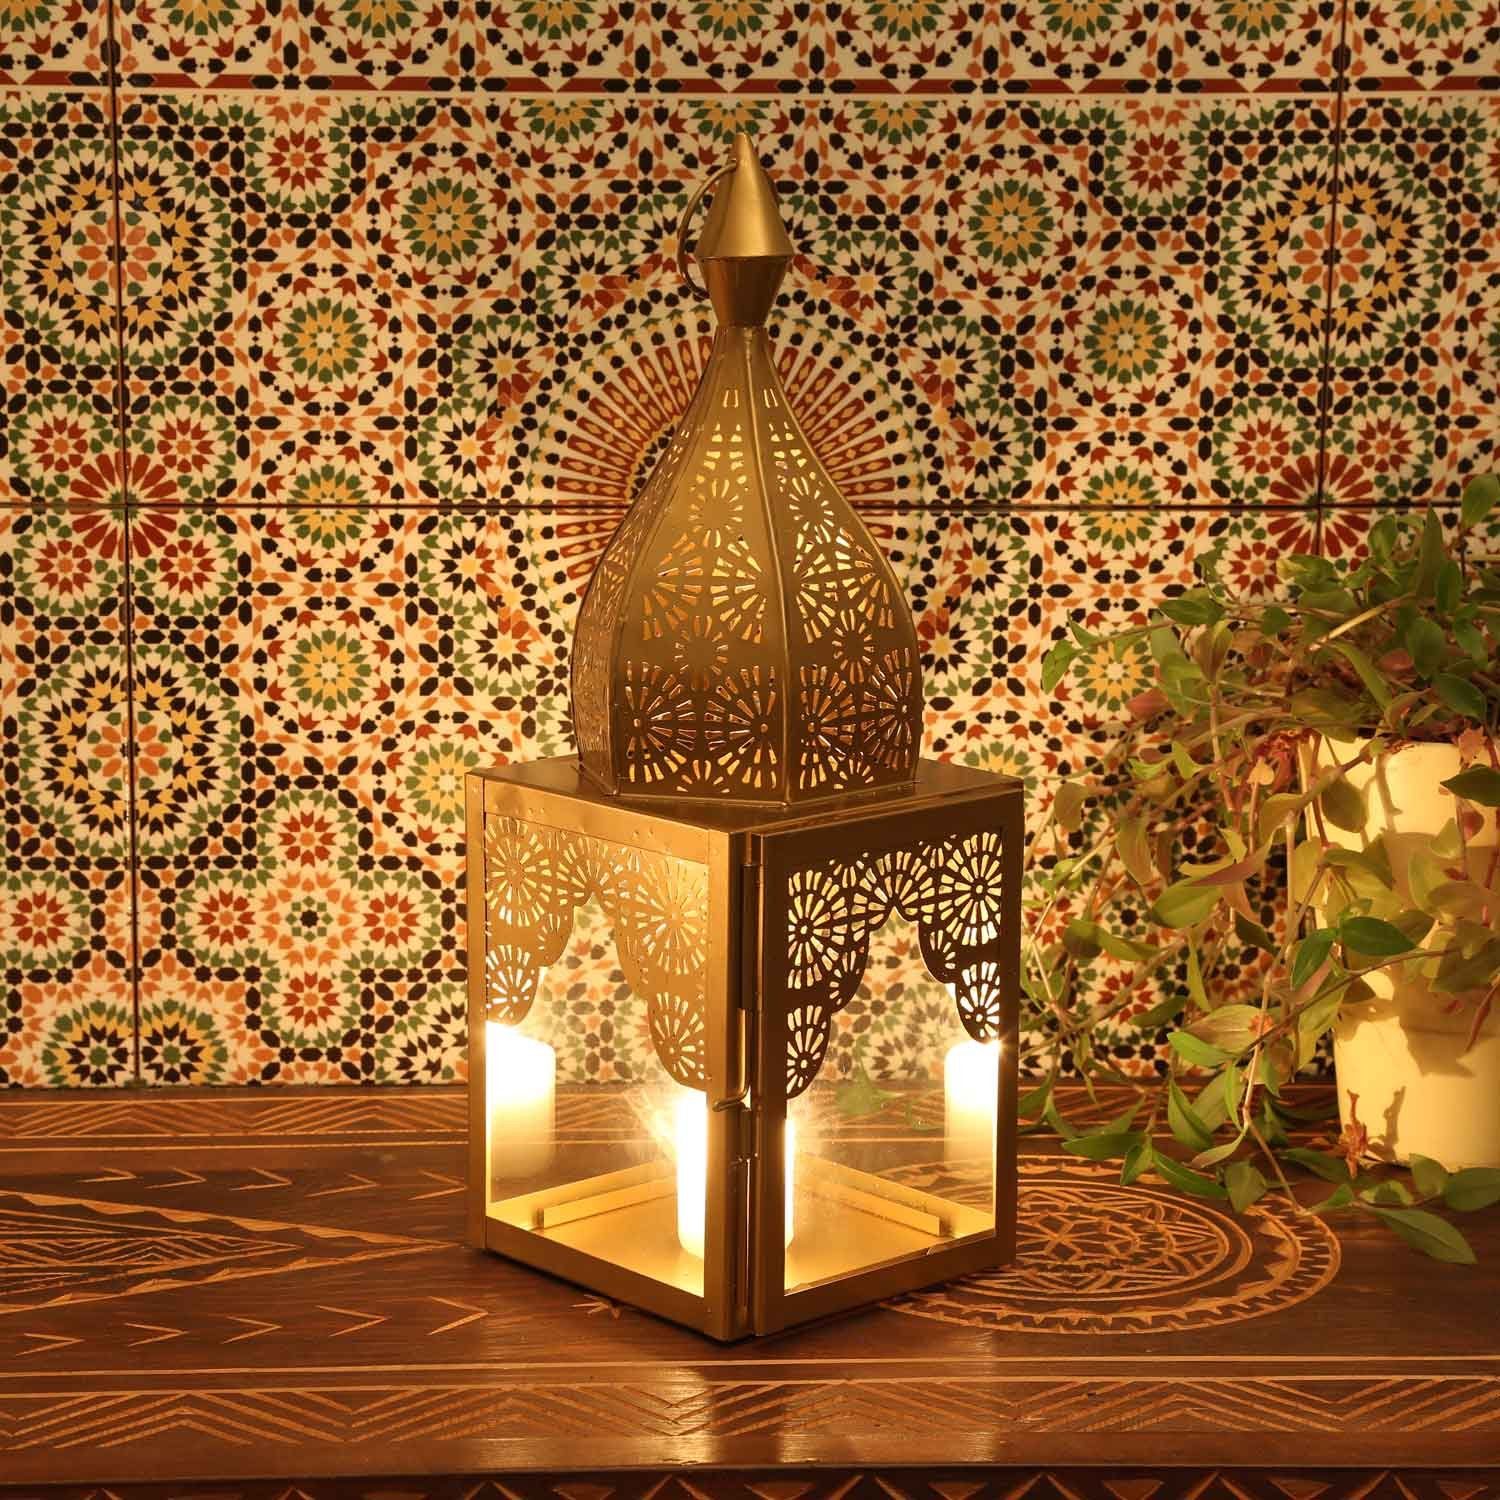 Windlicht in Form, Laterne Wohn-Deko M & Kunsthandwerk Modena Gold Metall Orientalisches Casa Weihnachten, Windlicht Glas 45cm Moro IRL650, aus Minaretten Marokkanische Kerzenhalter, Höhe